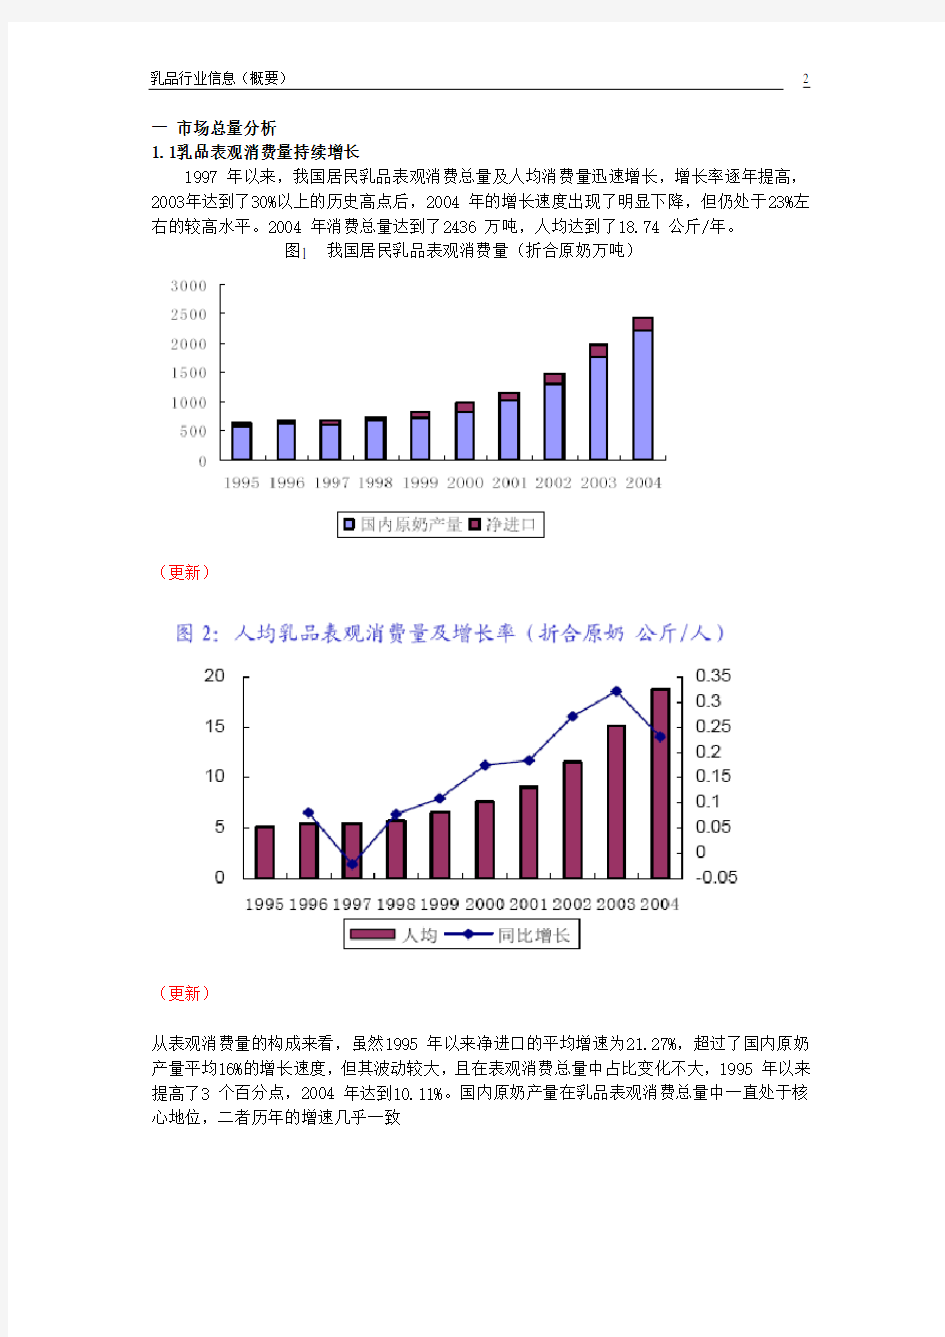 (行业分析)中国乳品行业分析和概述